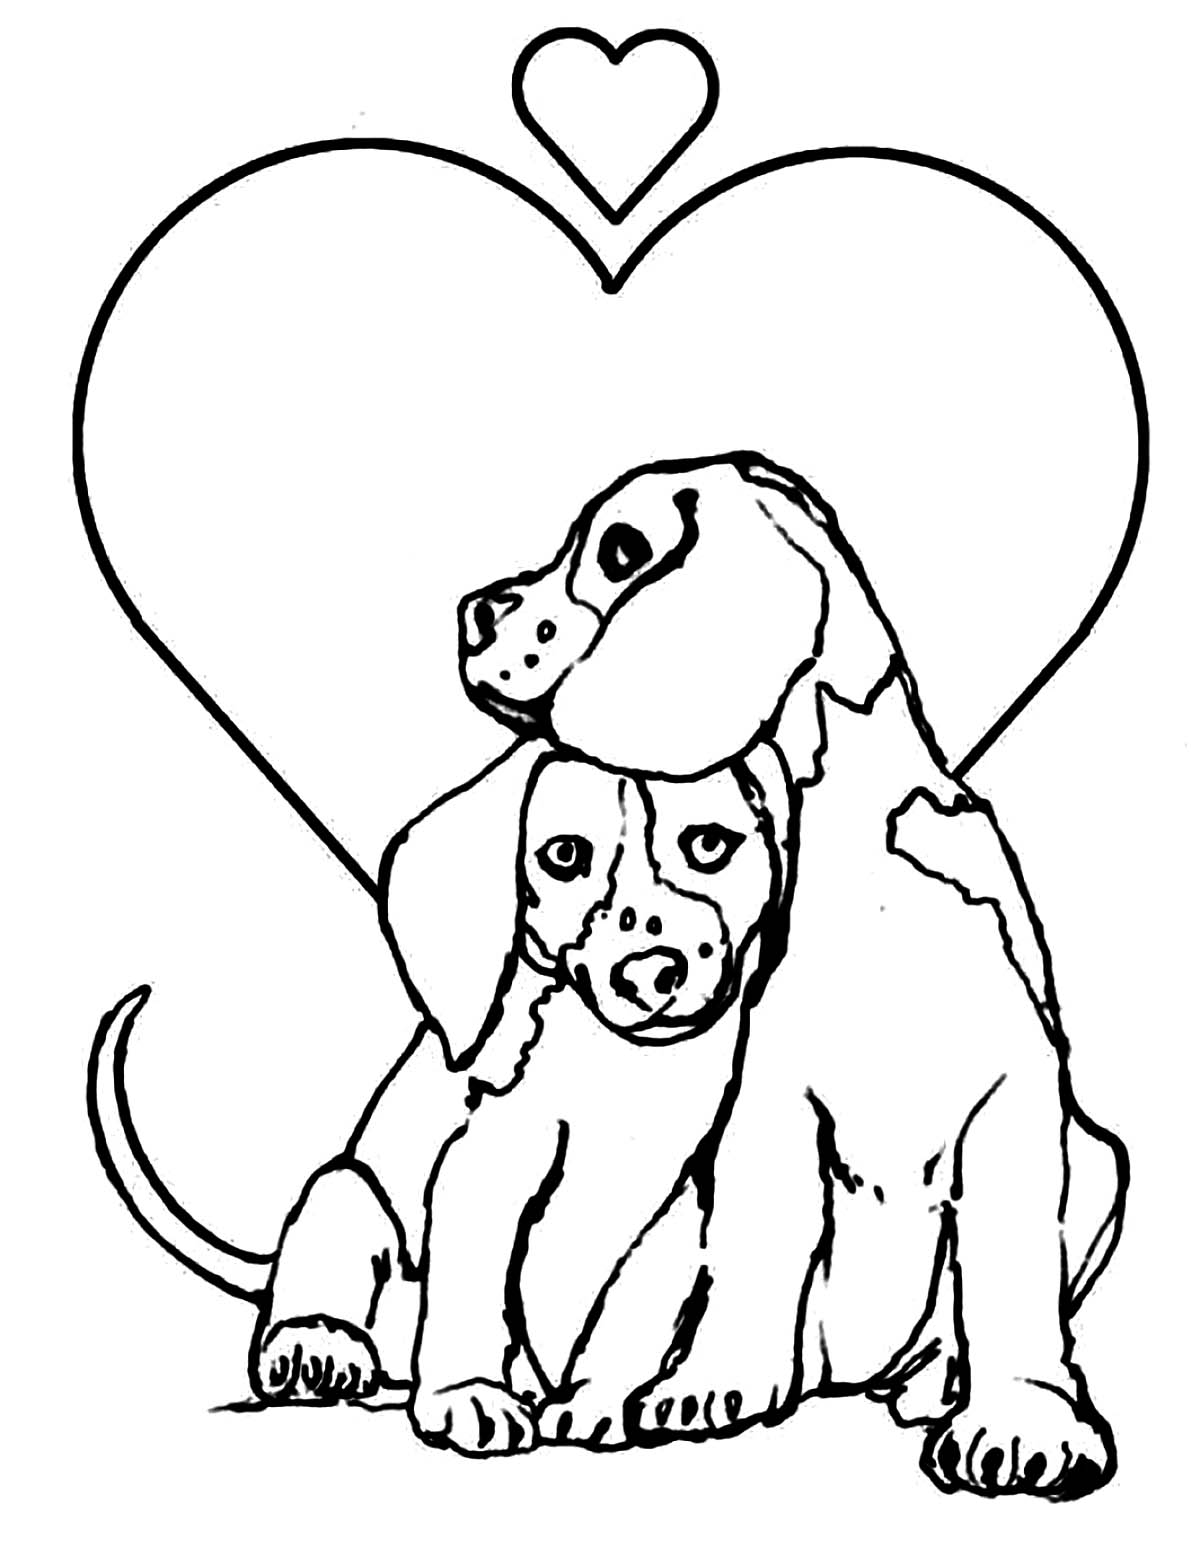 Disegno da colorare di cani beagle innamorati 